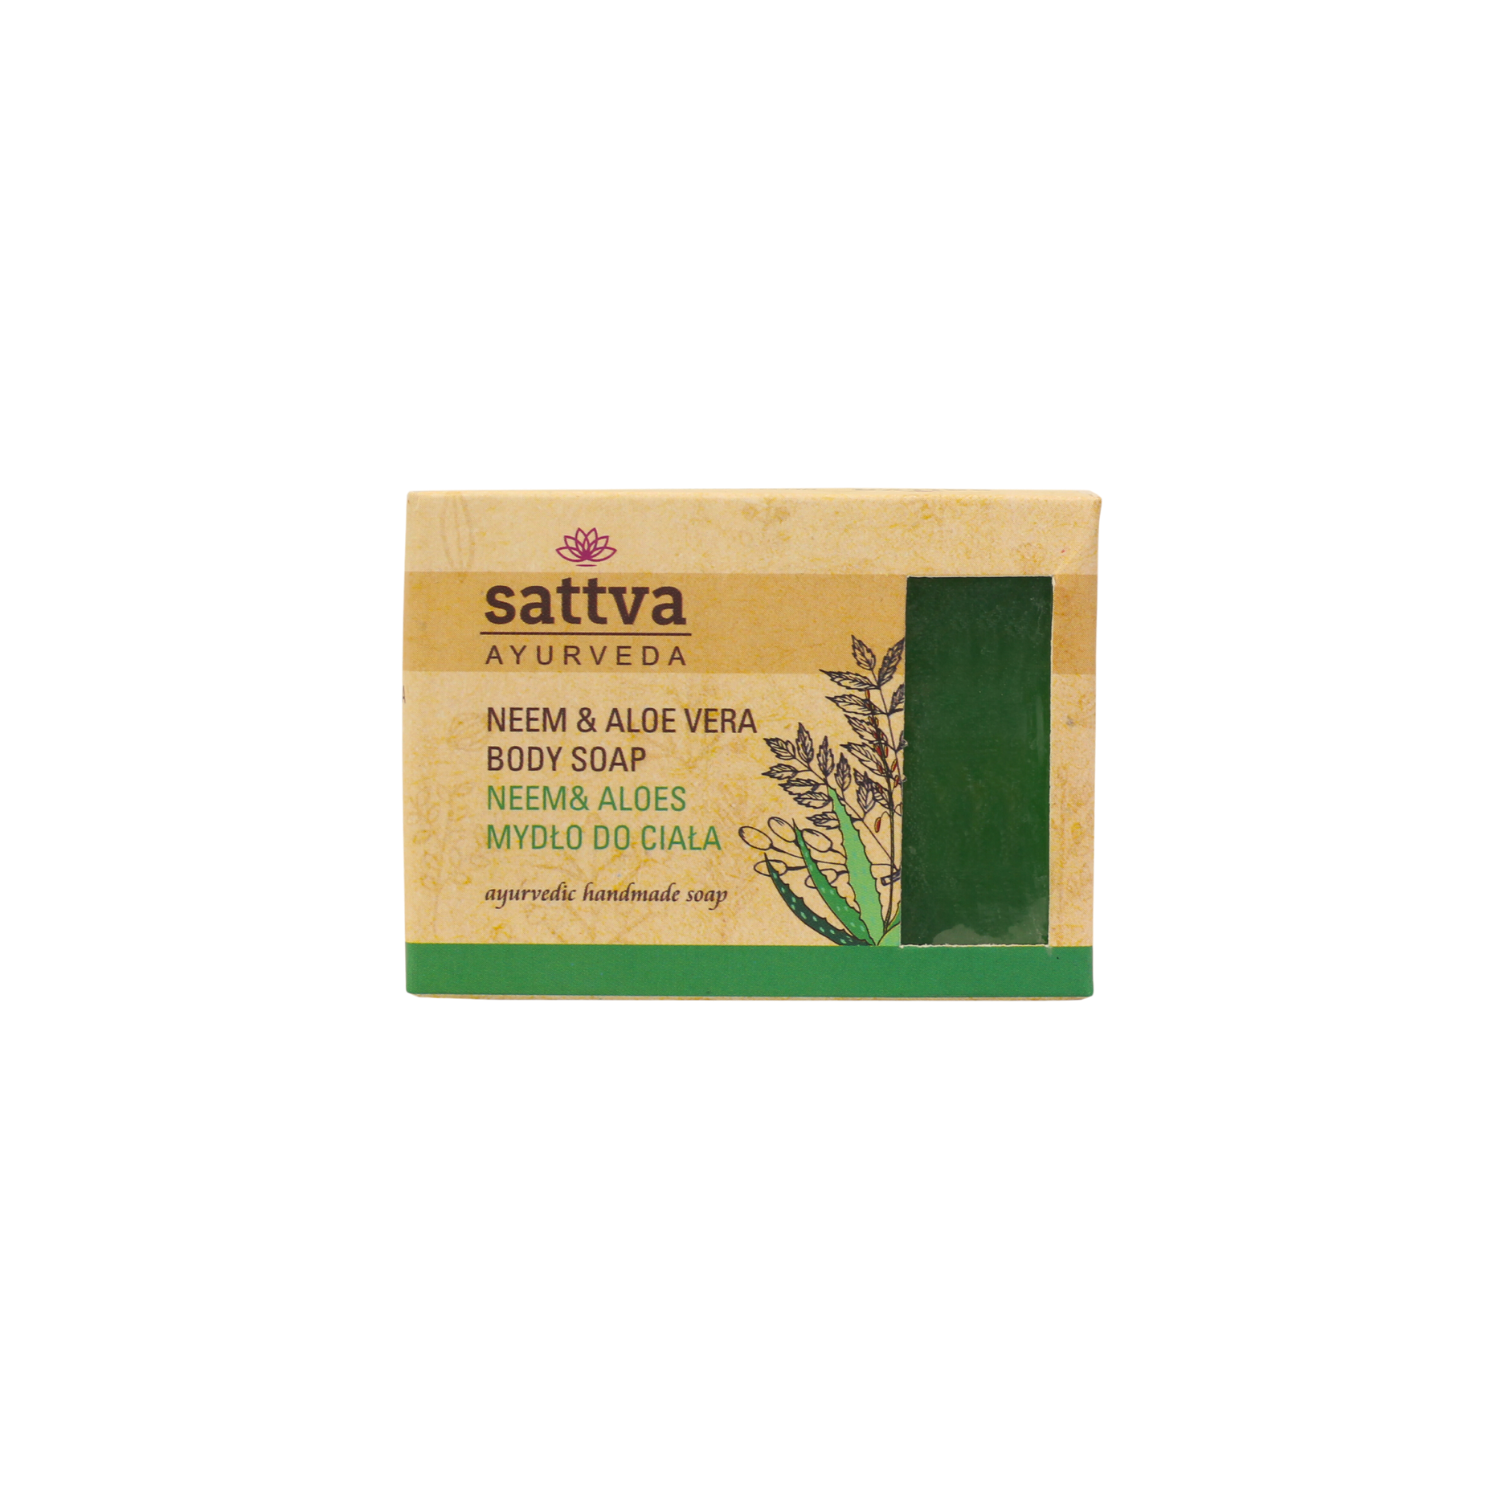 Мыло для тела Sattva, 125 гр